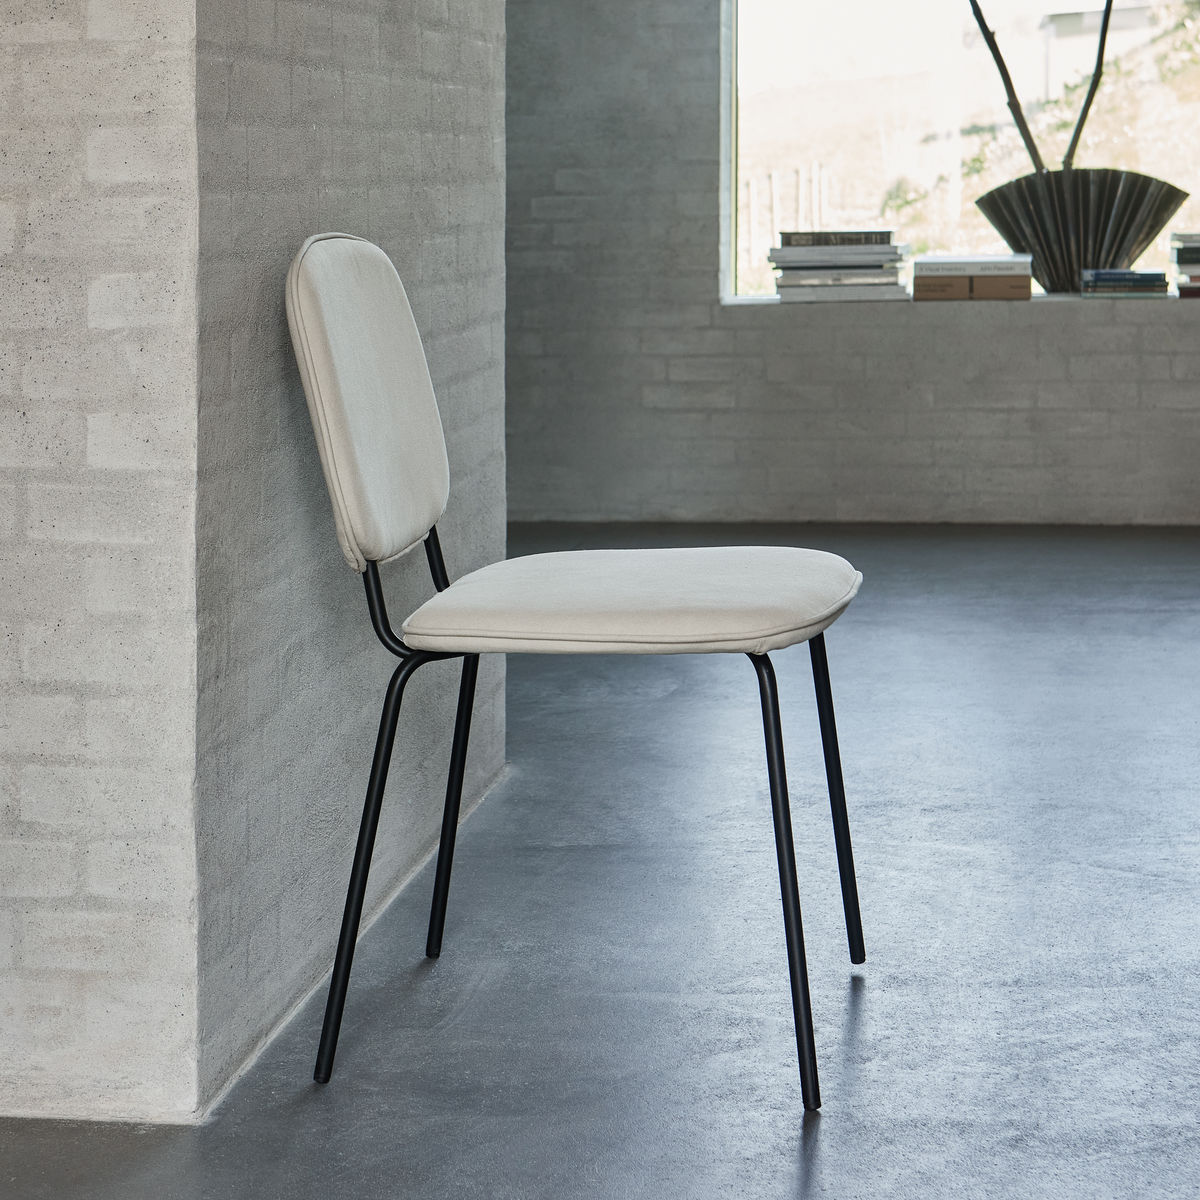 Stuhl, Coton in Sand präsentiert im Onlineshop von KAQTU Design AG. Stuhl ist von House Doctor